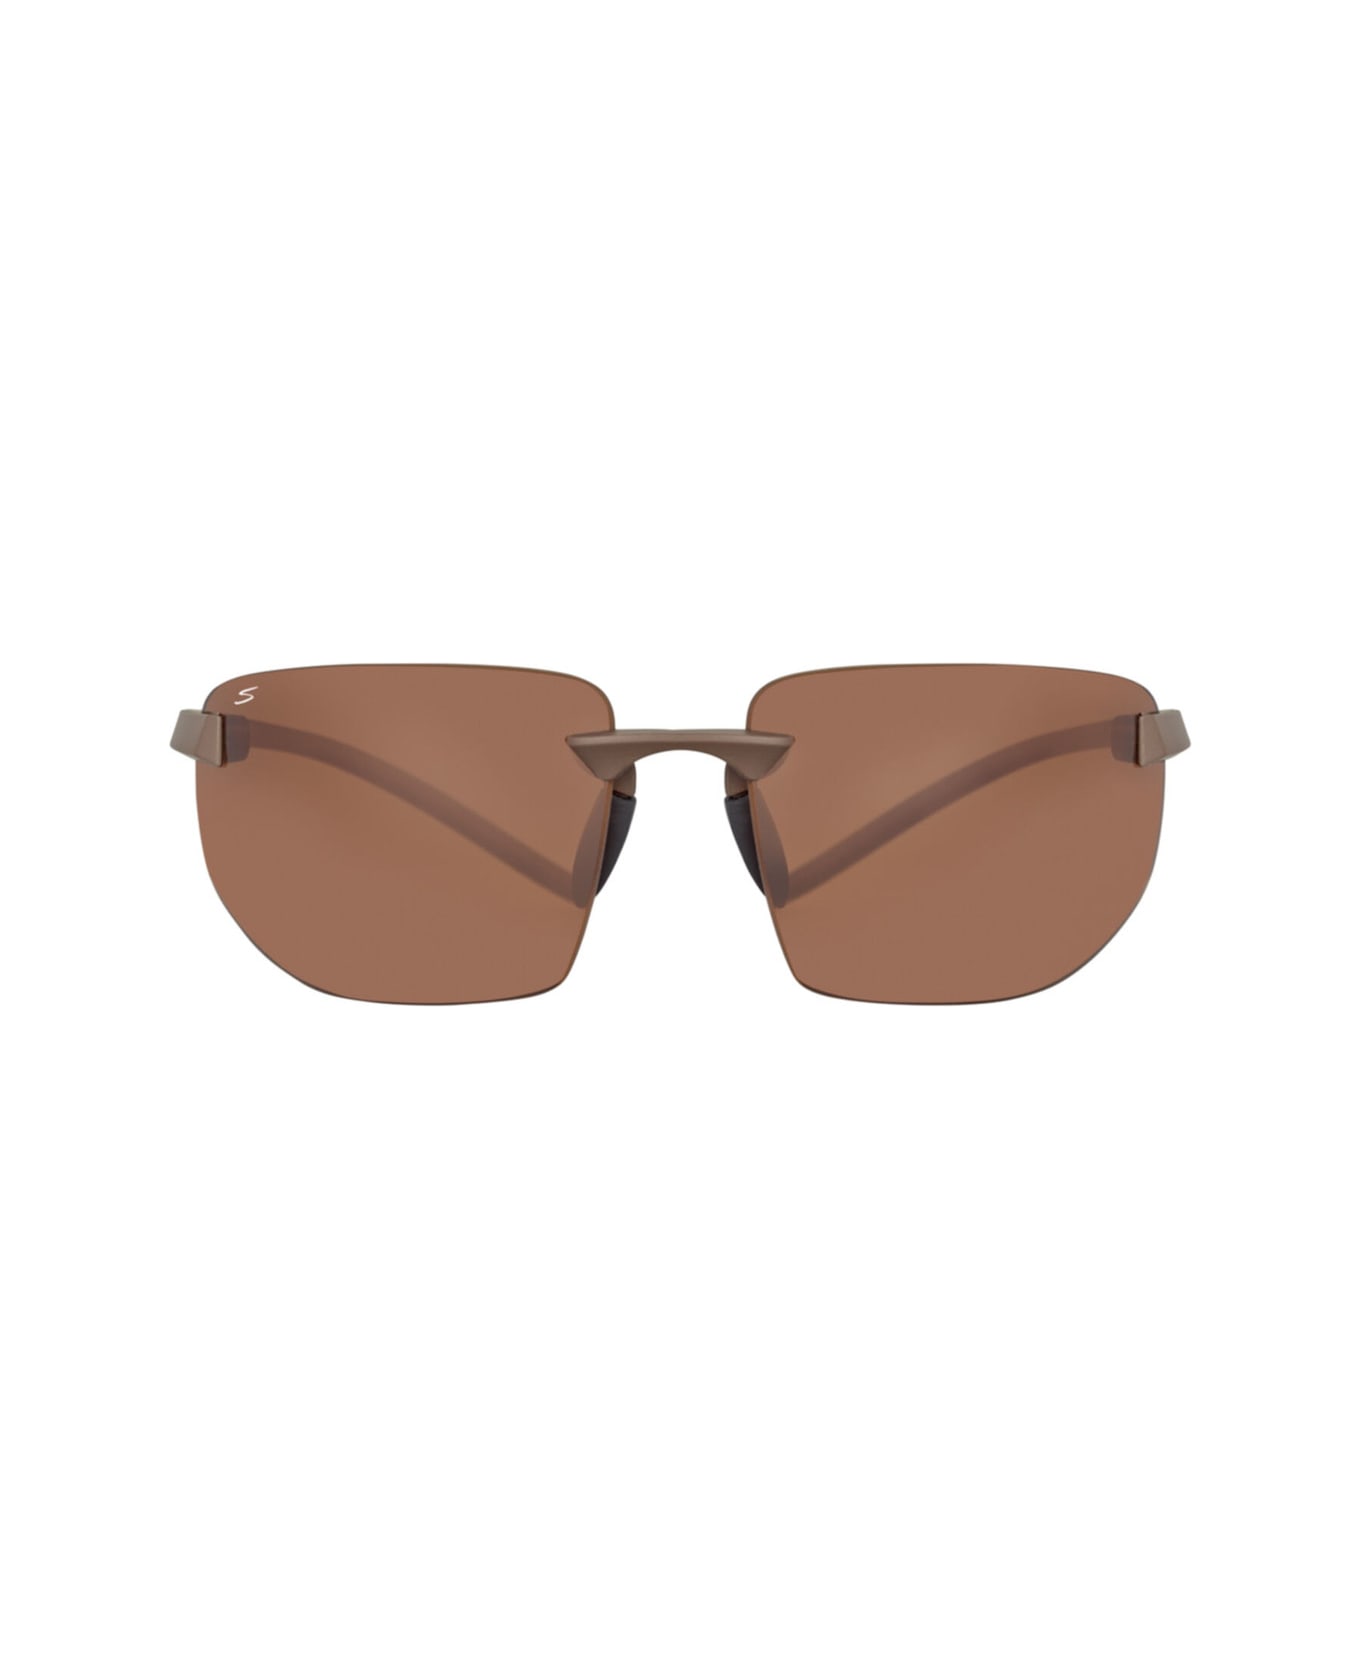 Serengeti Eyewear 553004 Sunglasses - Shiny Dark brown